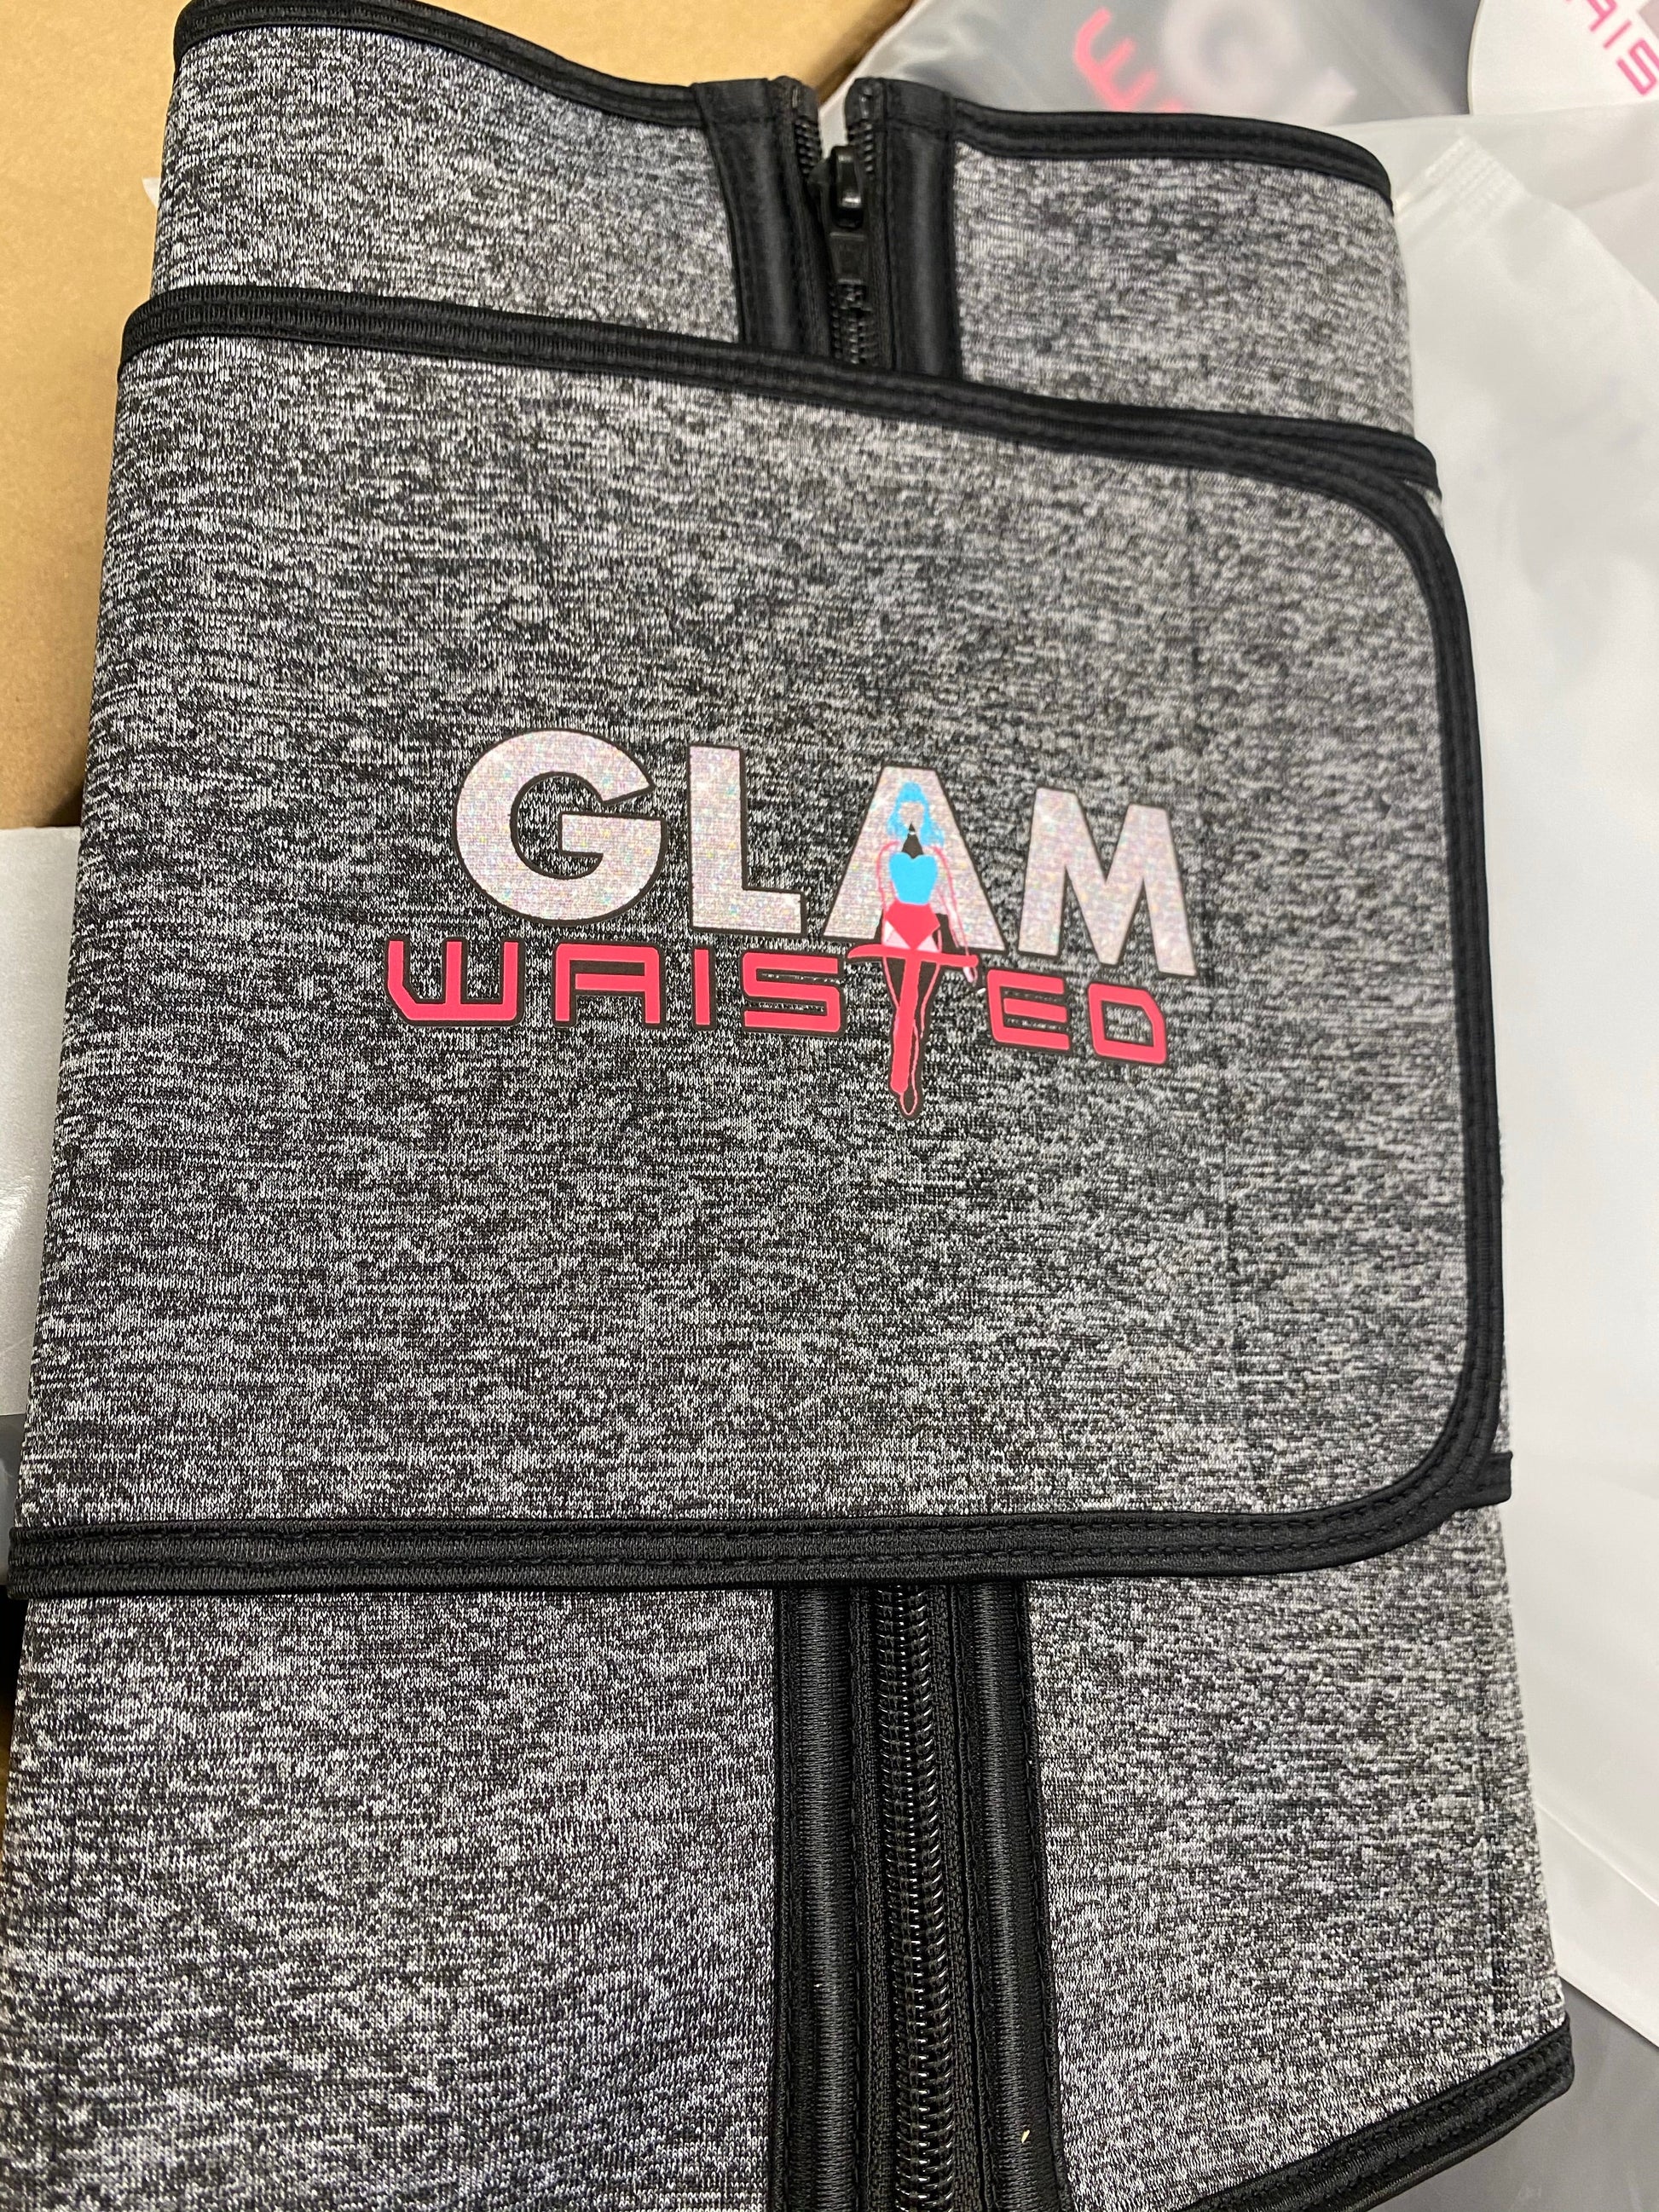 Glam Waisted 1 strap Waist Trainer - Glambella Shop